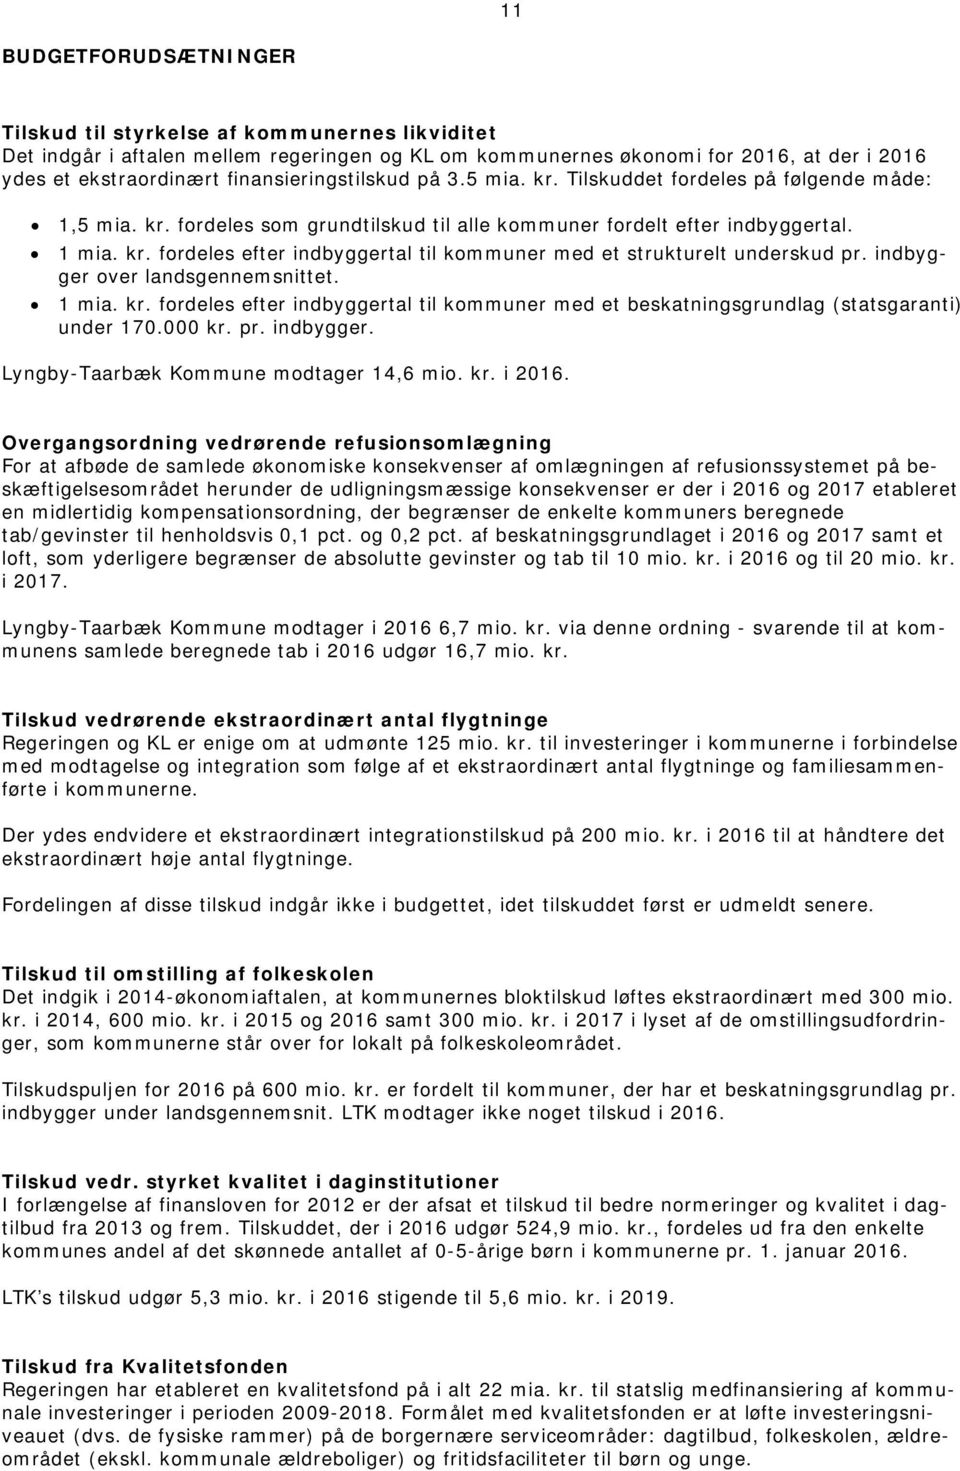 indbygger over landsgennemsnittet. 1 mia. kr. fordeles efter indbyggertal til kommuner med et beskatningsgrundlag (statsgaranti) under 170.000 kr. pr. indbygger. Lyngby-Taarbæk Kommune modtager 14,6 mio.